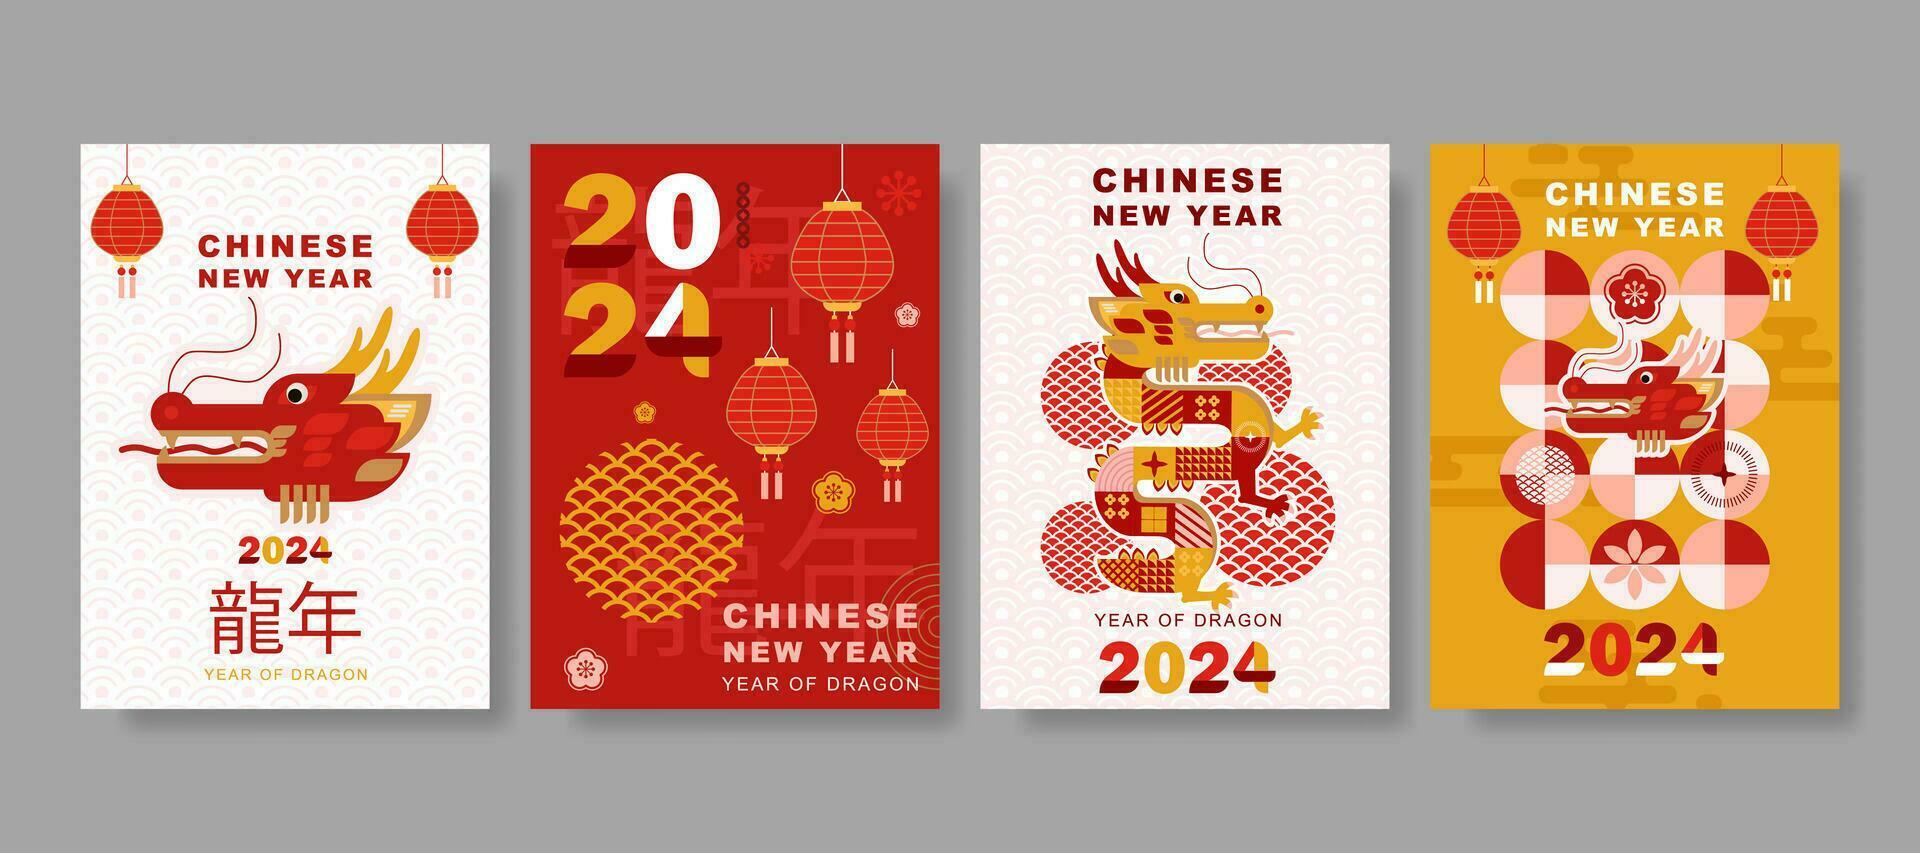 modern konst kinesisk ny år 2024 design uppsättning i röd, guld och vit färger för omslag, kort, affisch, baner vektor